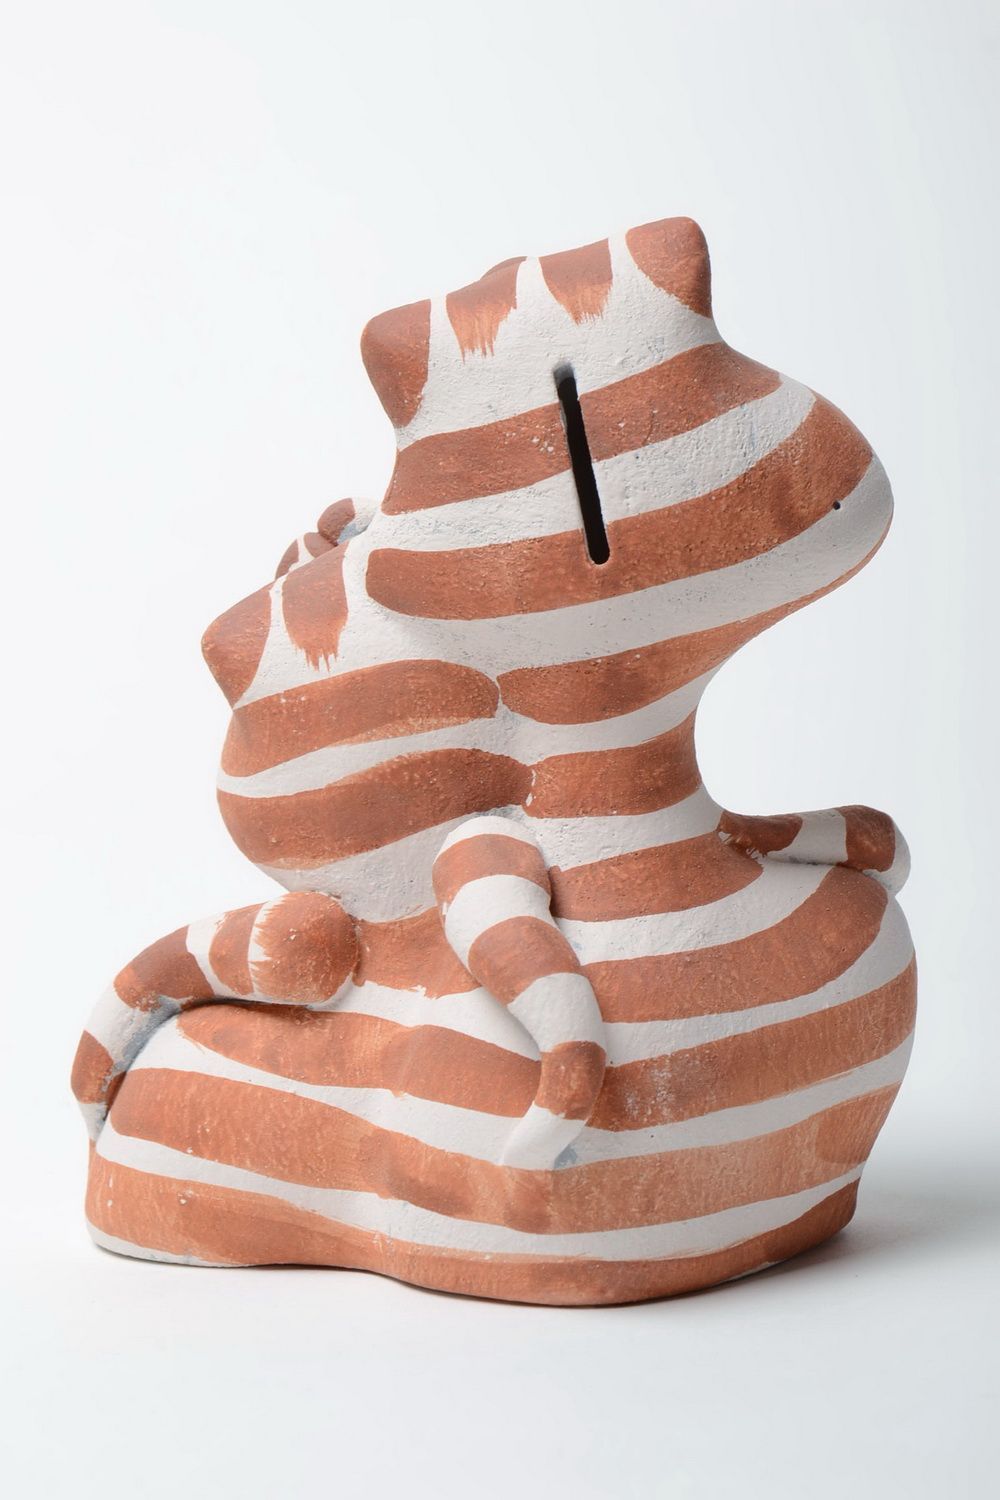 Tirelire céramique chat demi-porcelaine décoration pratique et originale photo 3